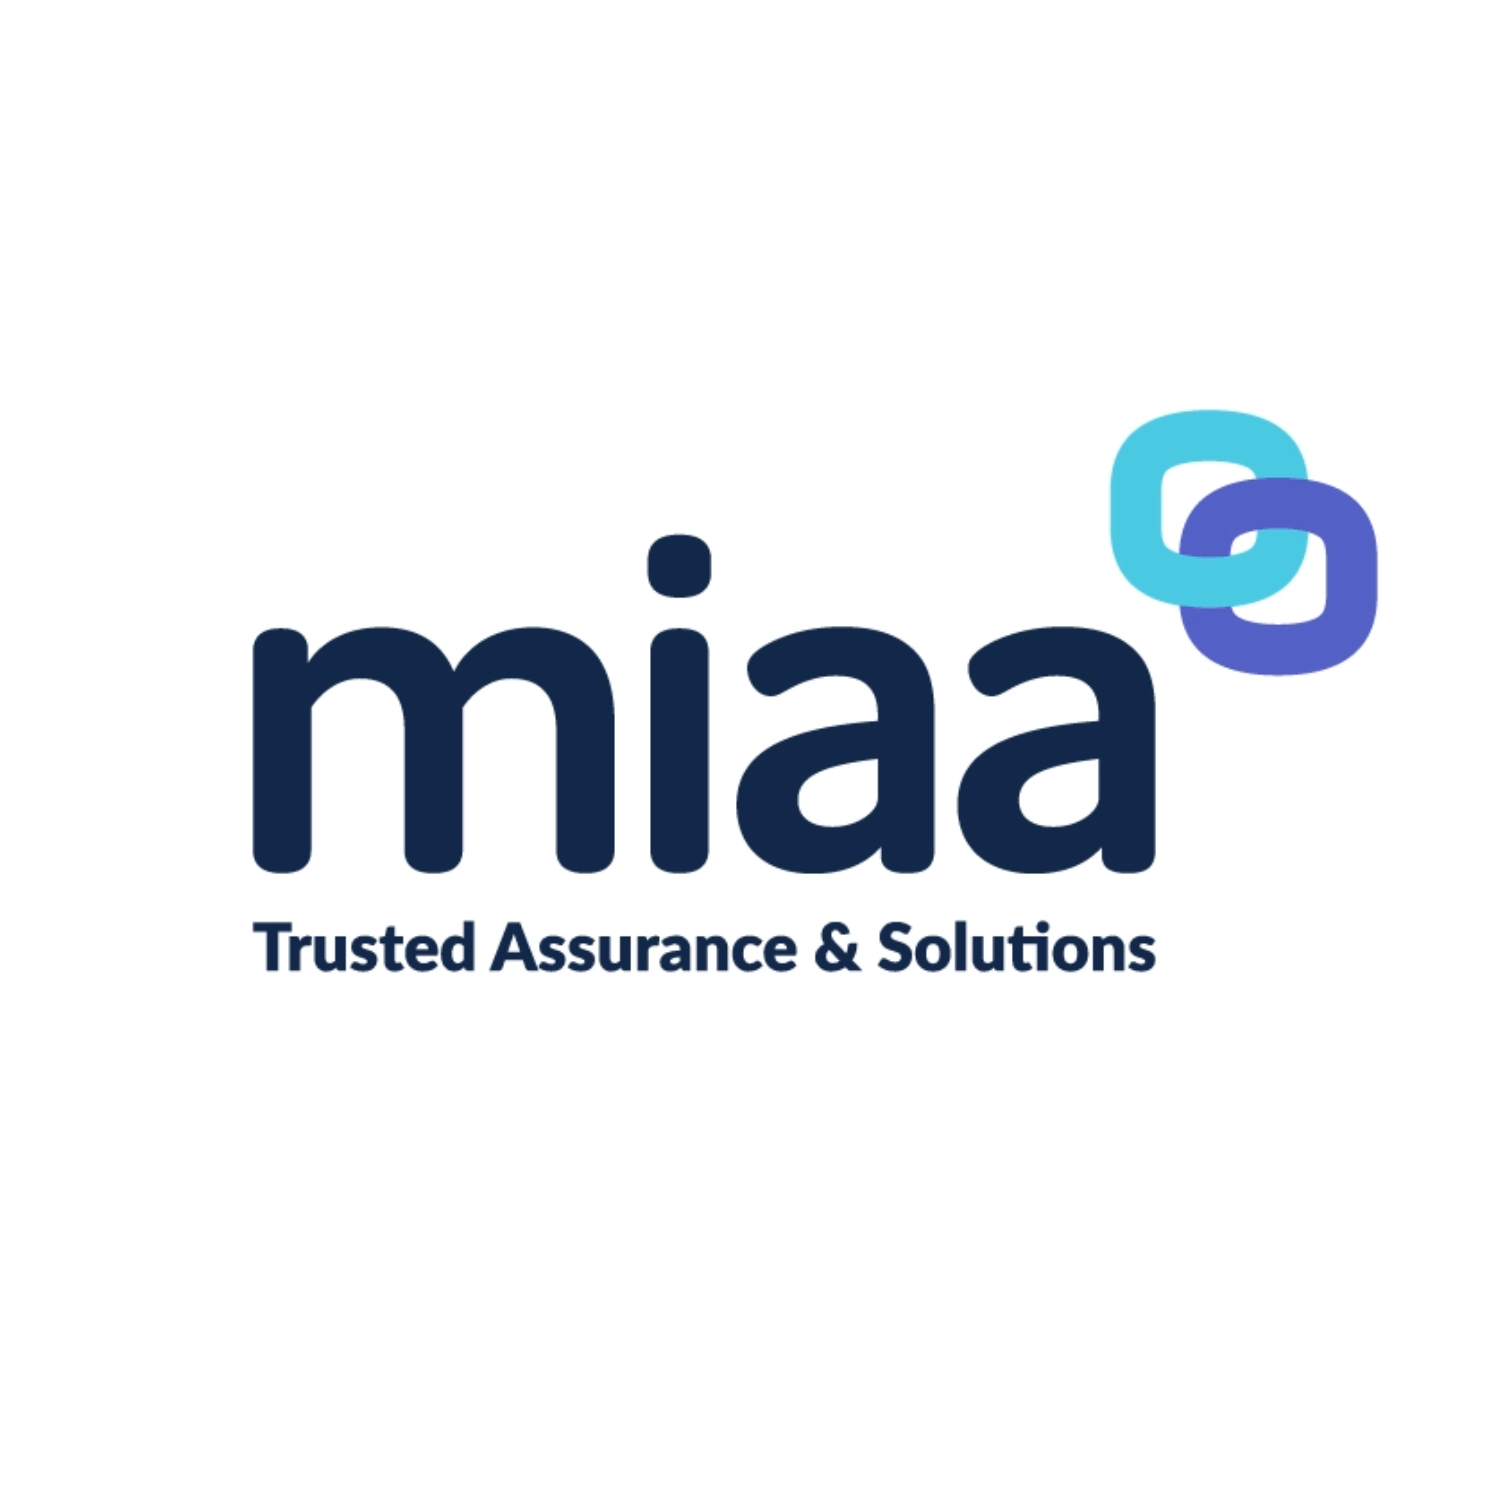 MIAA logo